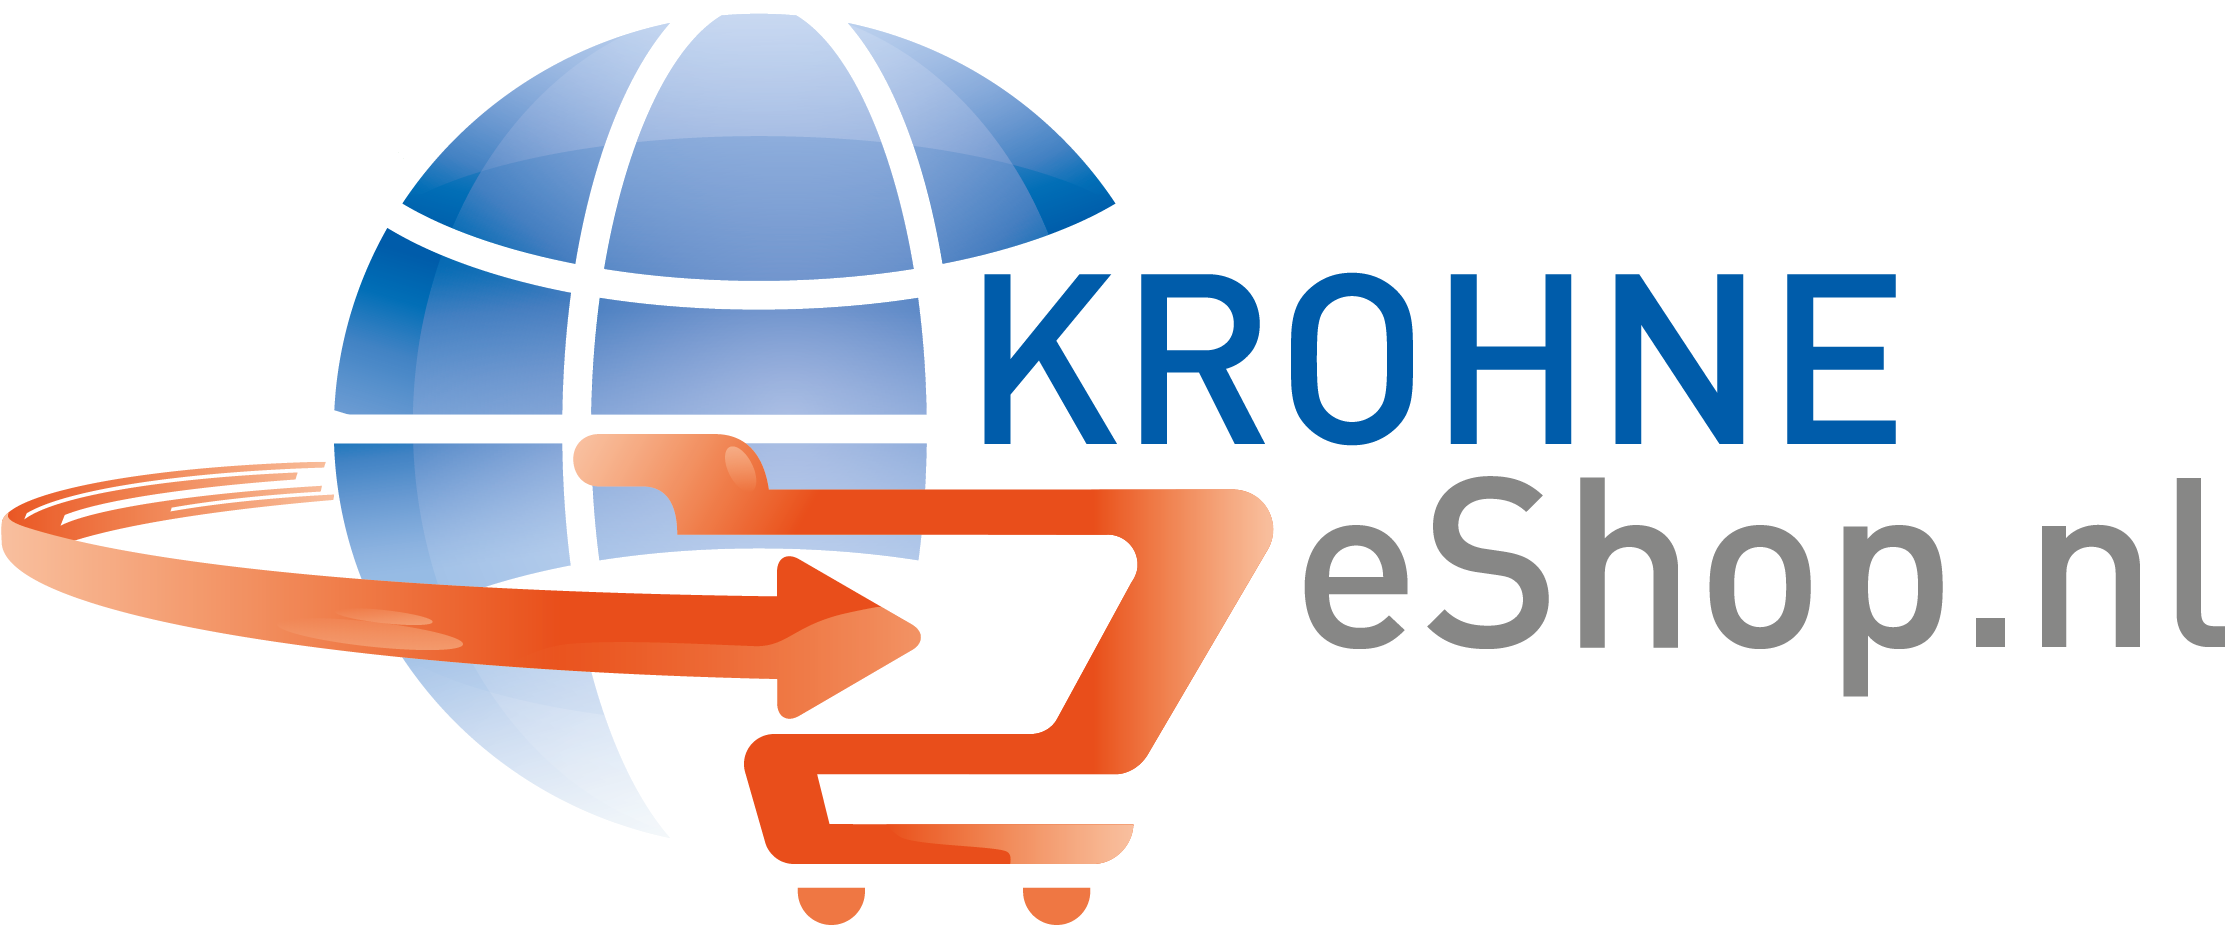 KROHNE Online-Shop Logo